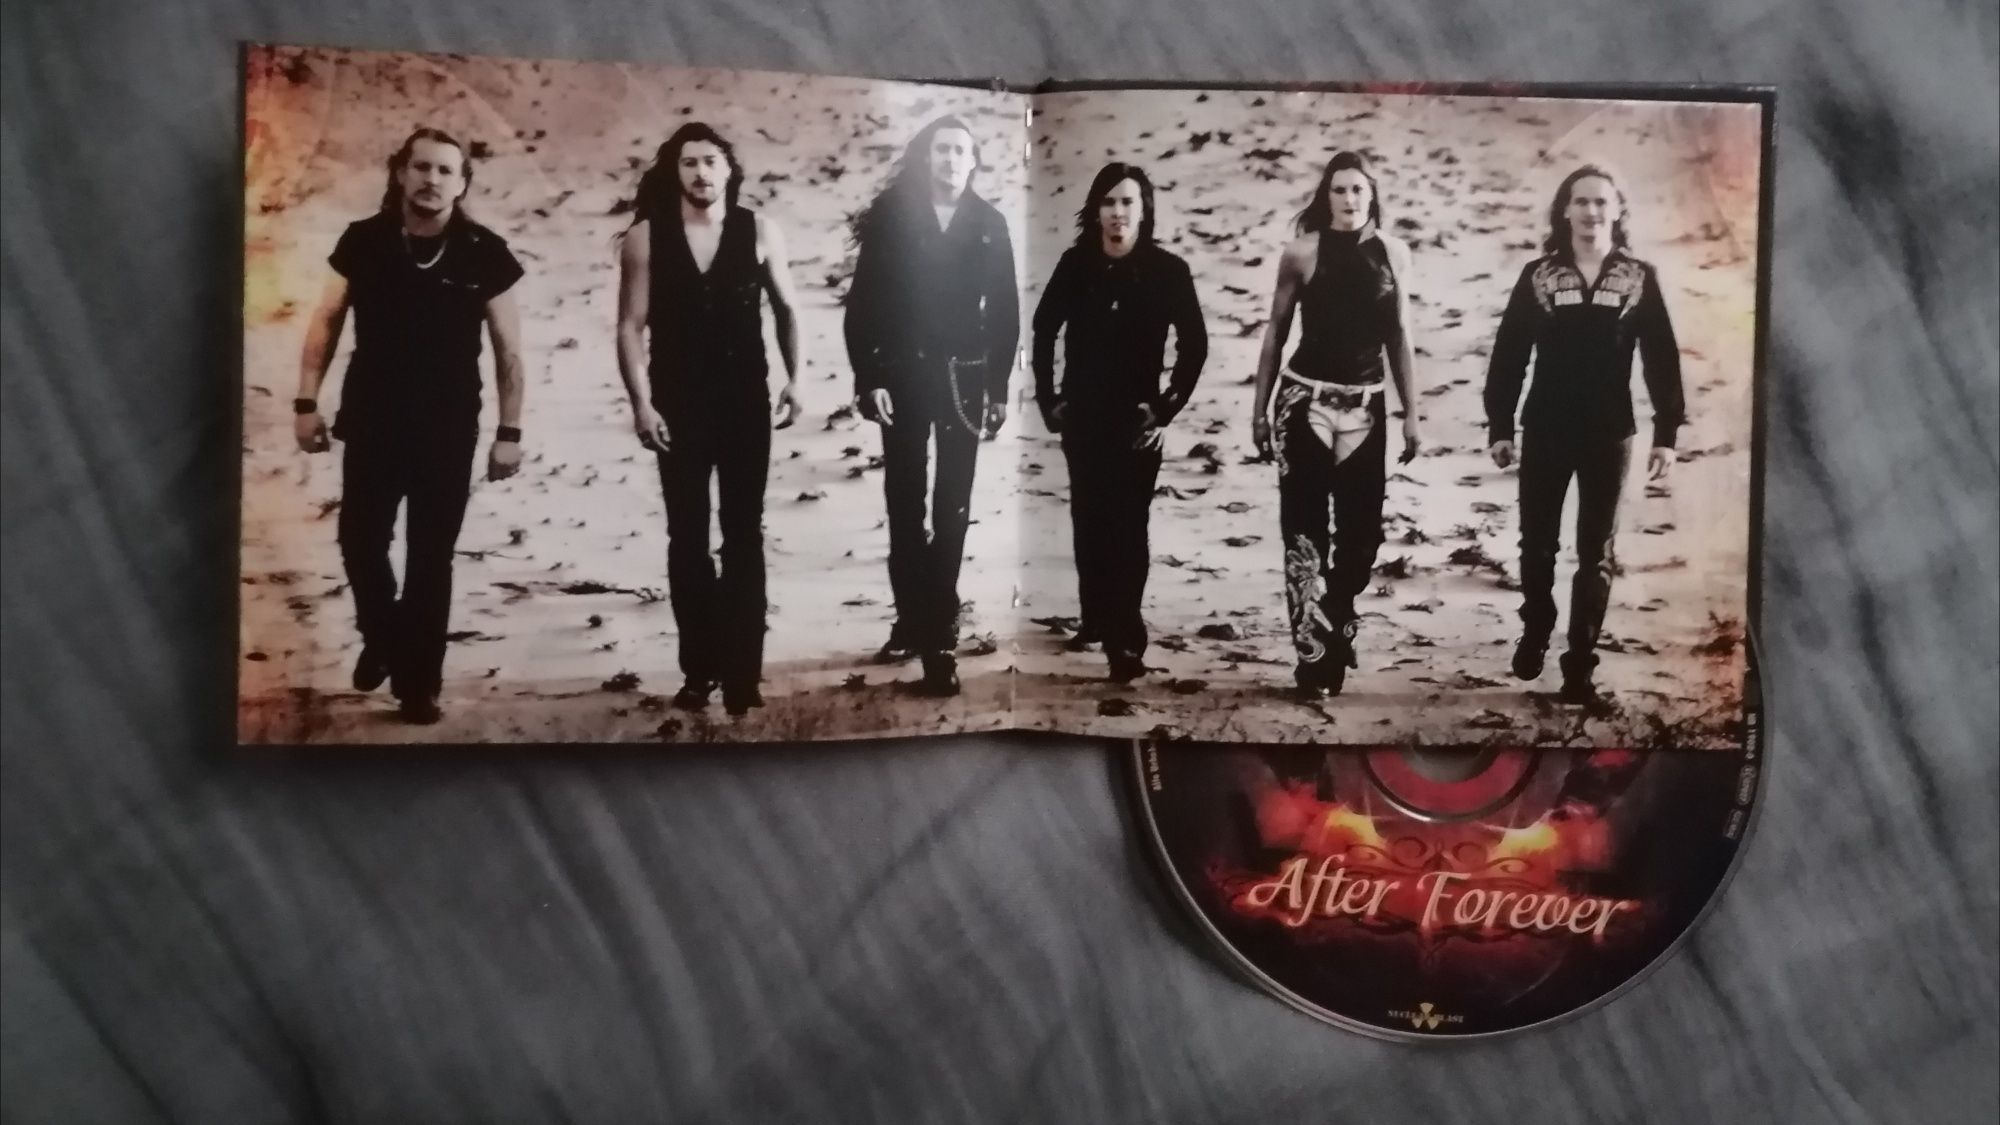 After Forever - After Forever, 2007